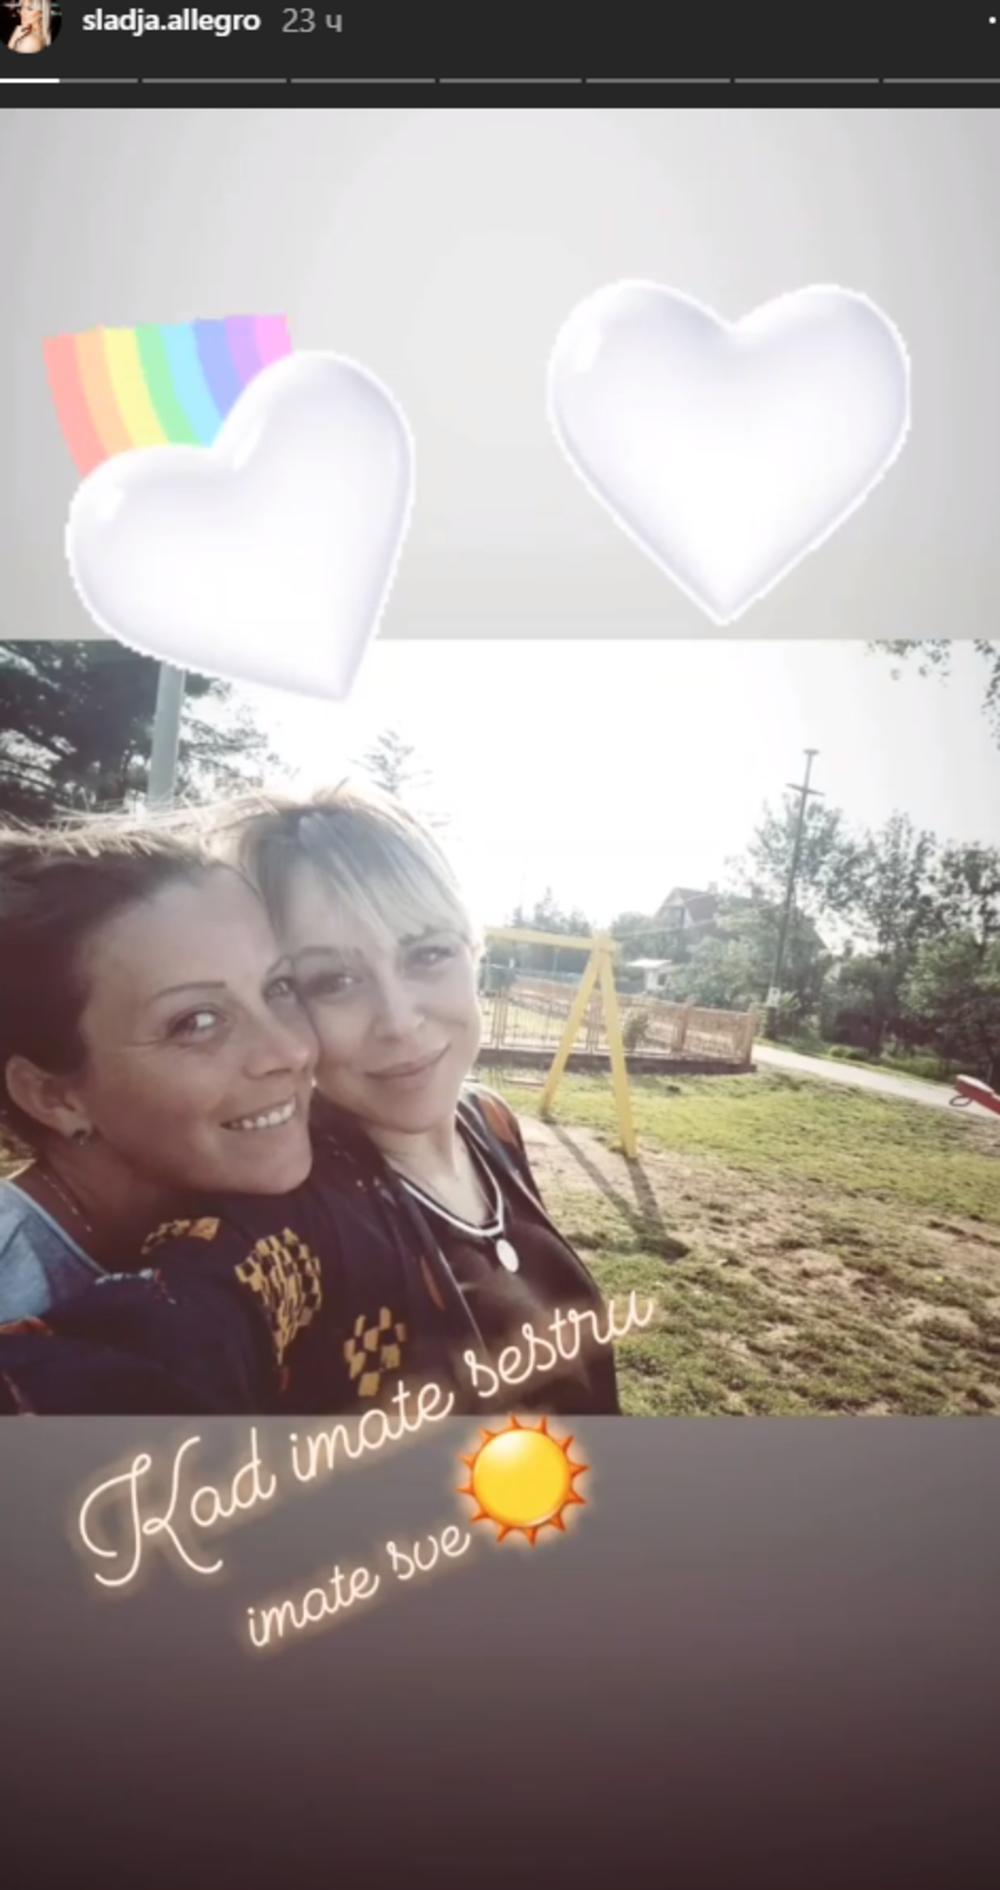 Sa svojim pratiocima na Instagramu podelila je fotografiju sa svojom sestrom  